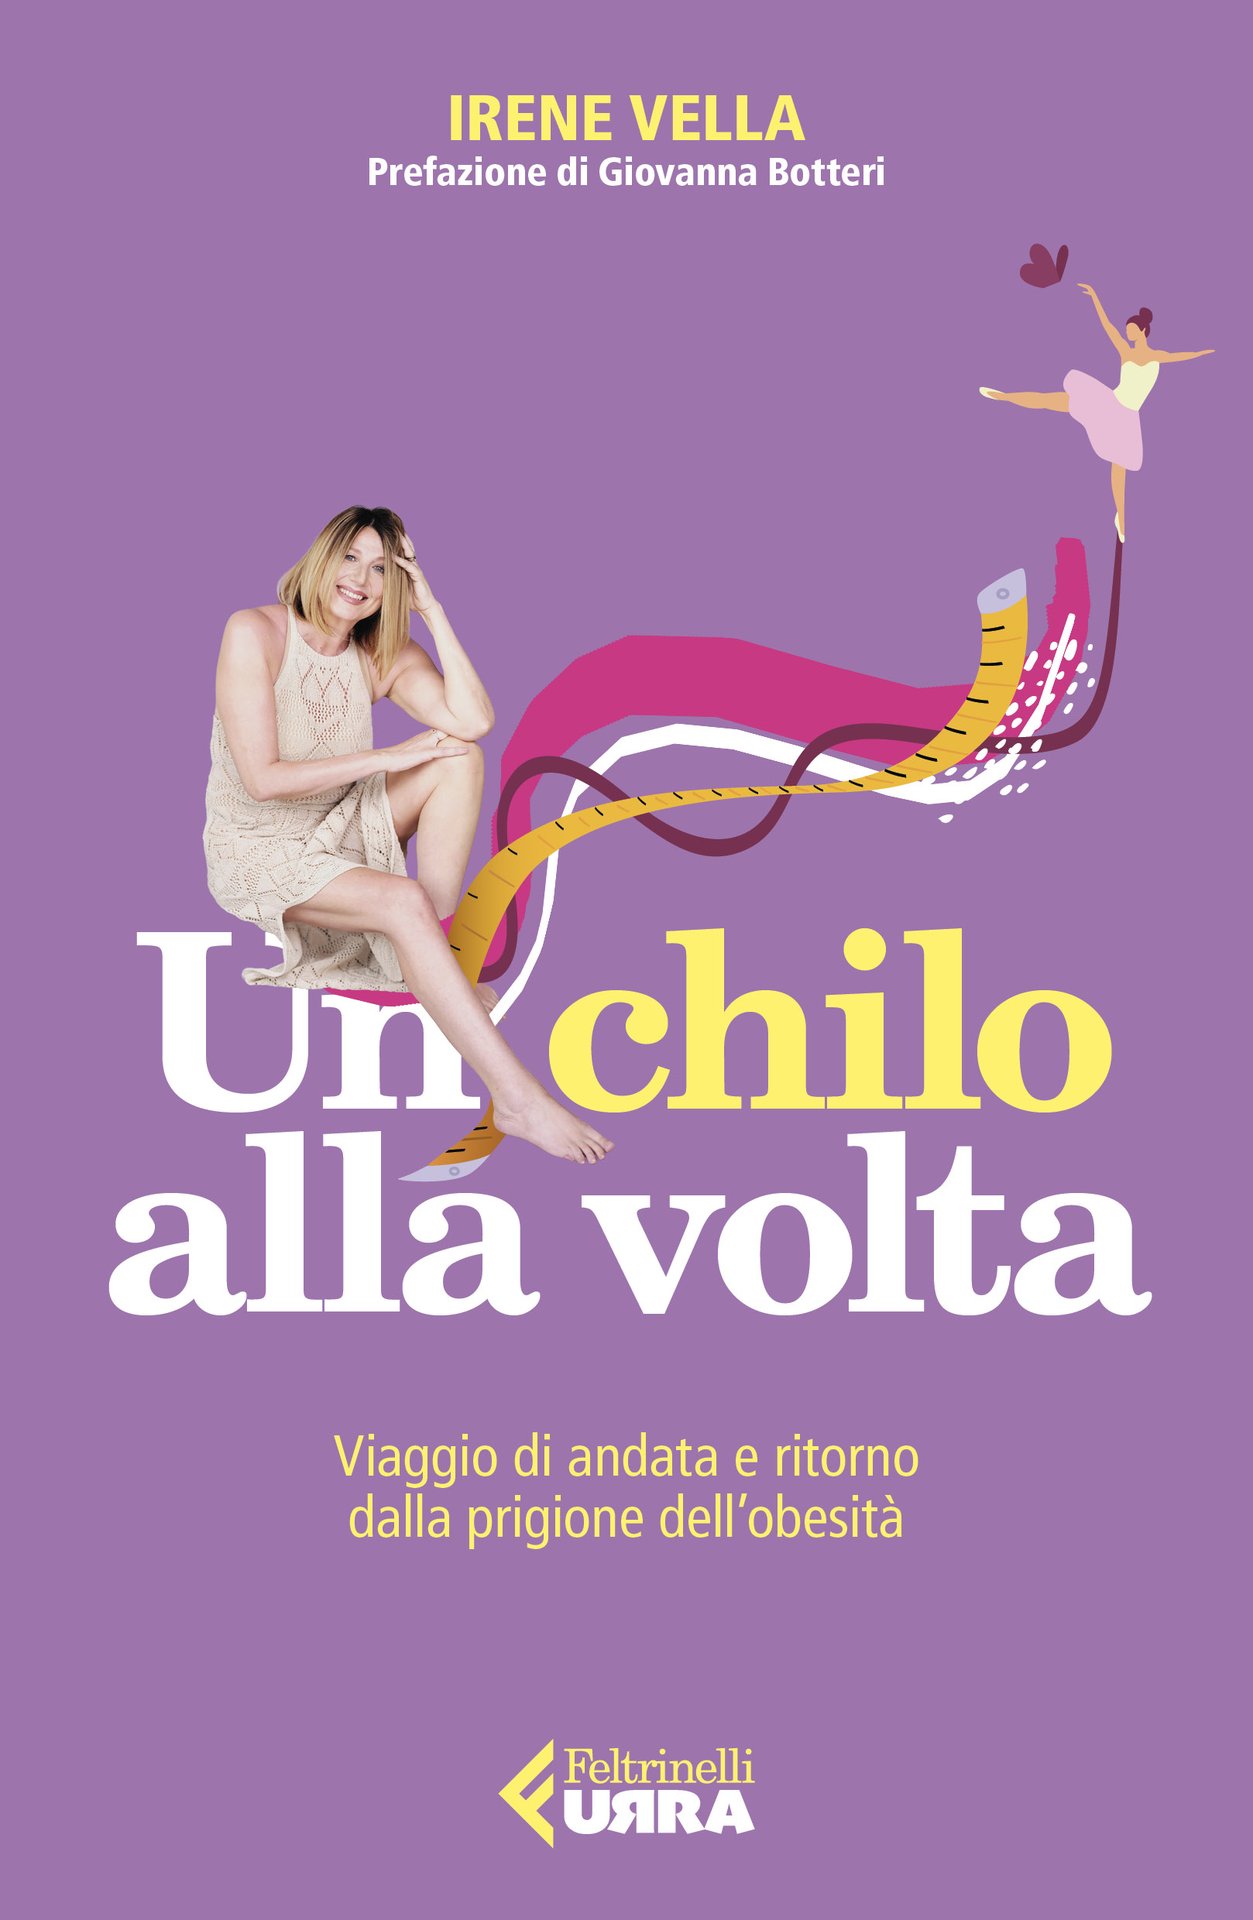 Irene Vella presenta "Un chilo alla volta" alla Libreria Lovat di Villorba